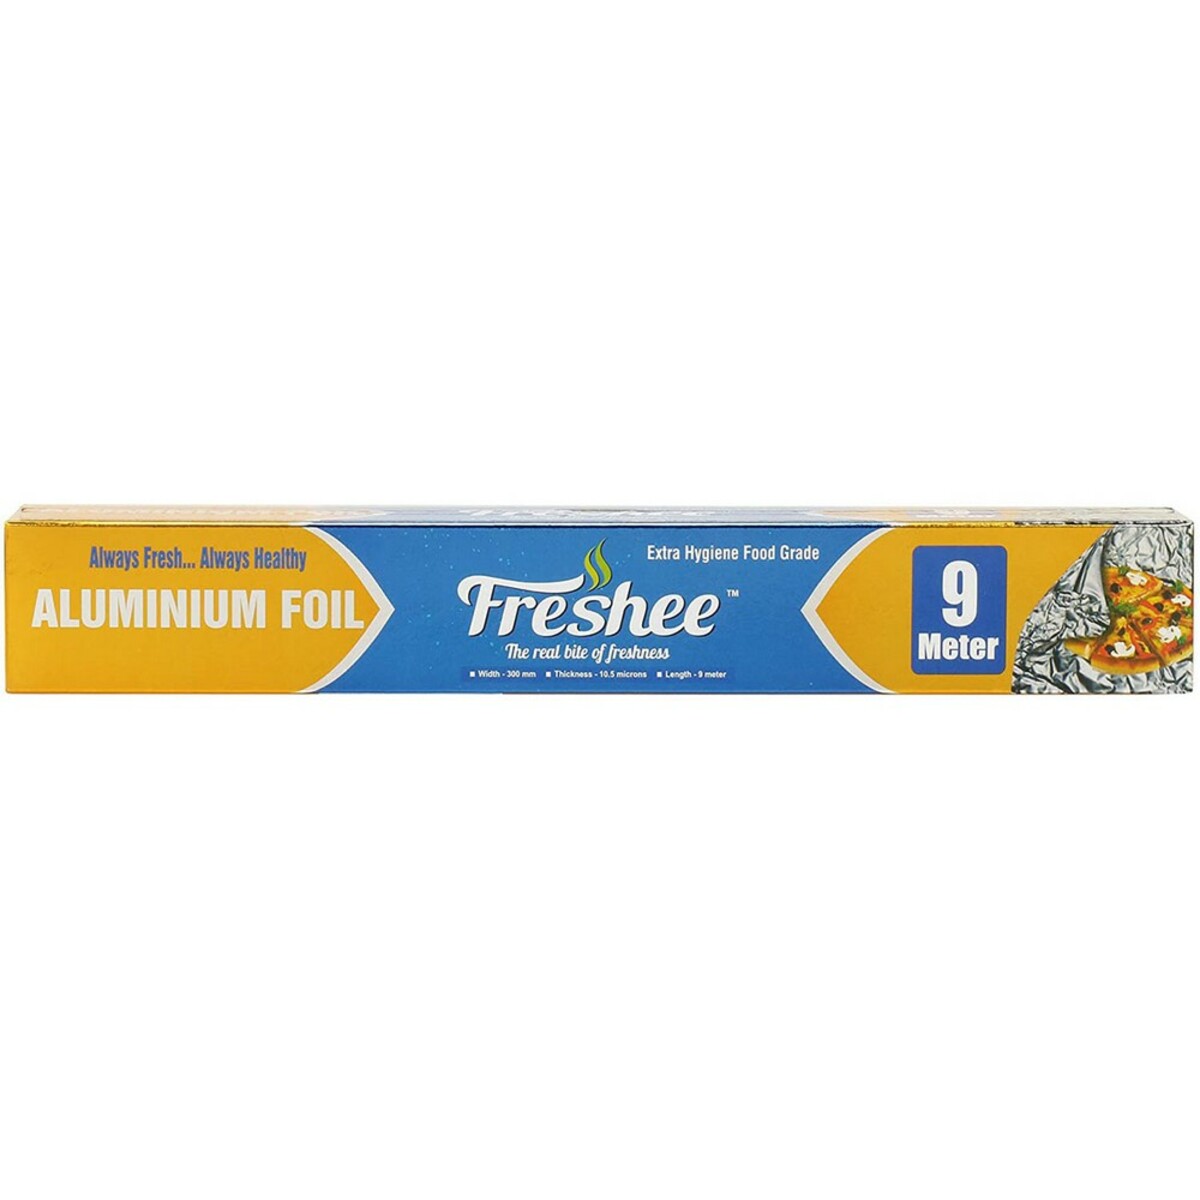 Freshee Aluminum Foil 9 mtr